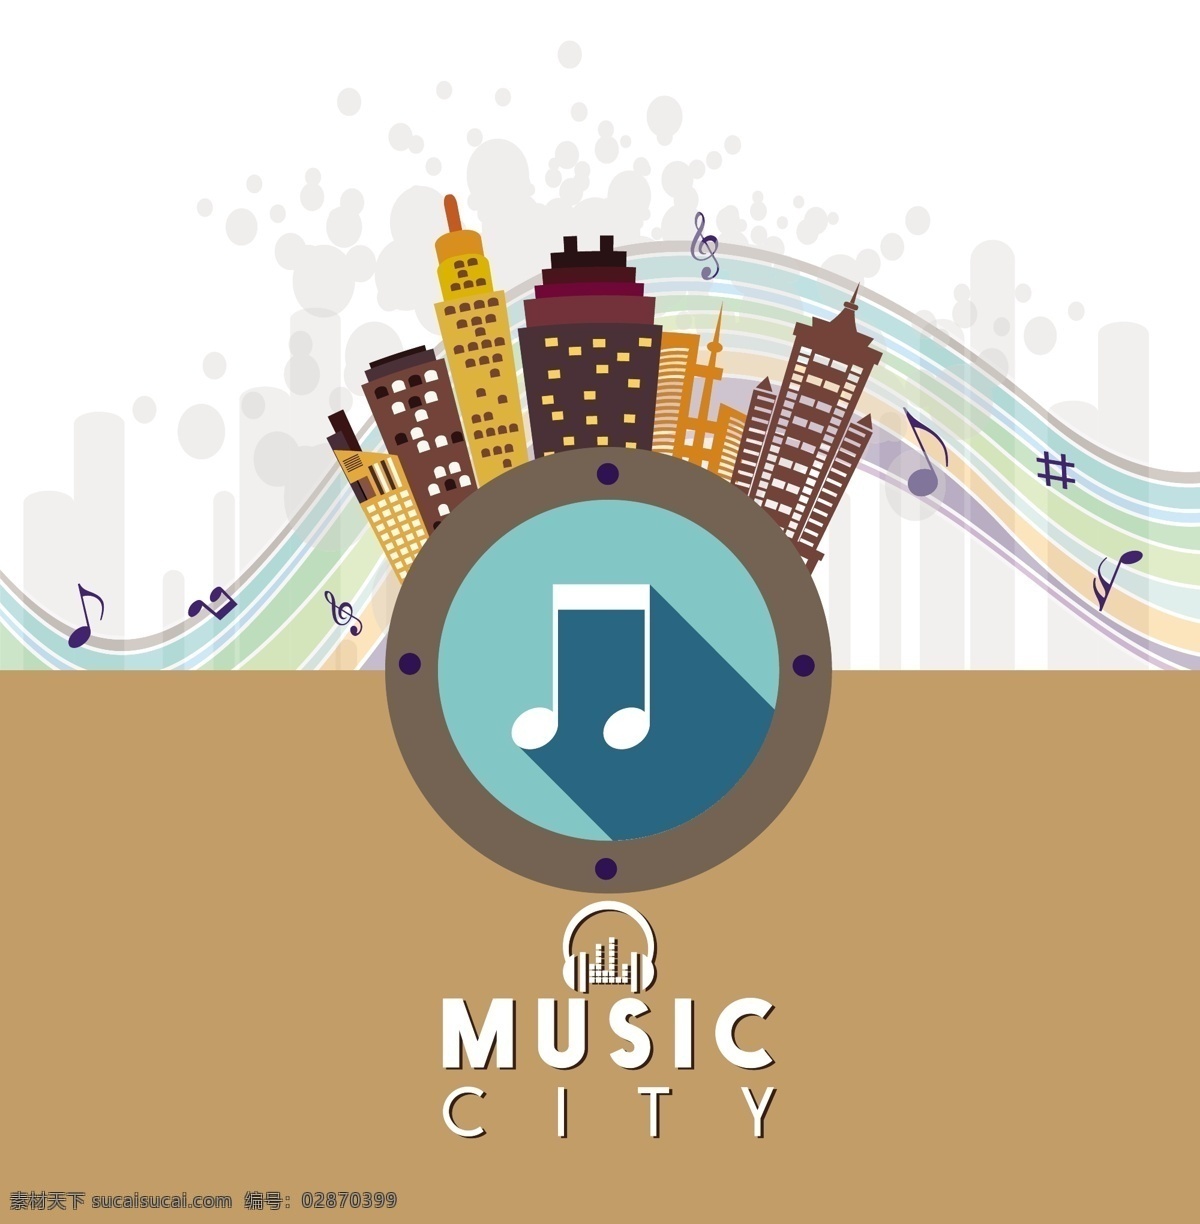 音乐 城市 矢量图 音符 音乐城市 动听的音乐